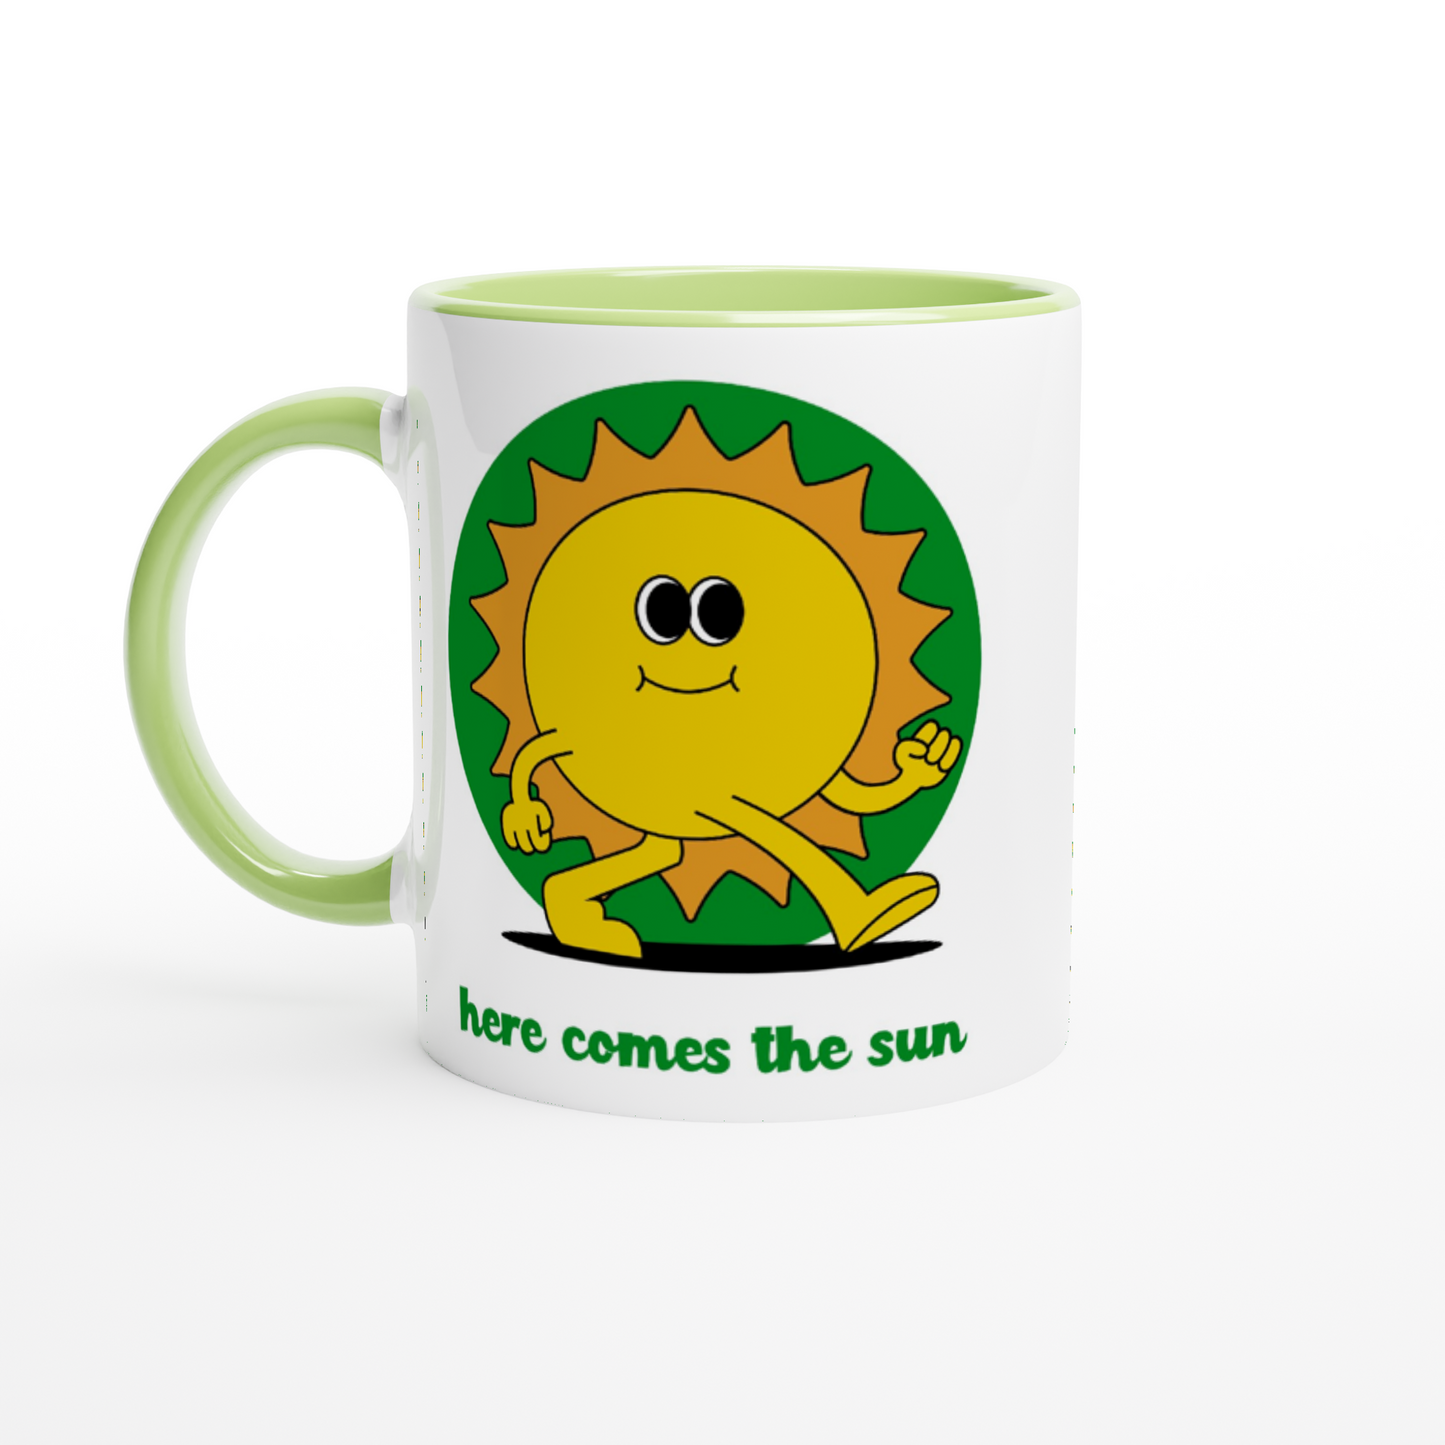 Here Comes The Sun - White 11oz Ceramic Mug with Colour Inside ceramic green Colour 11oz Mug Retro Summer